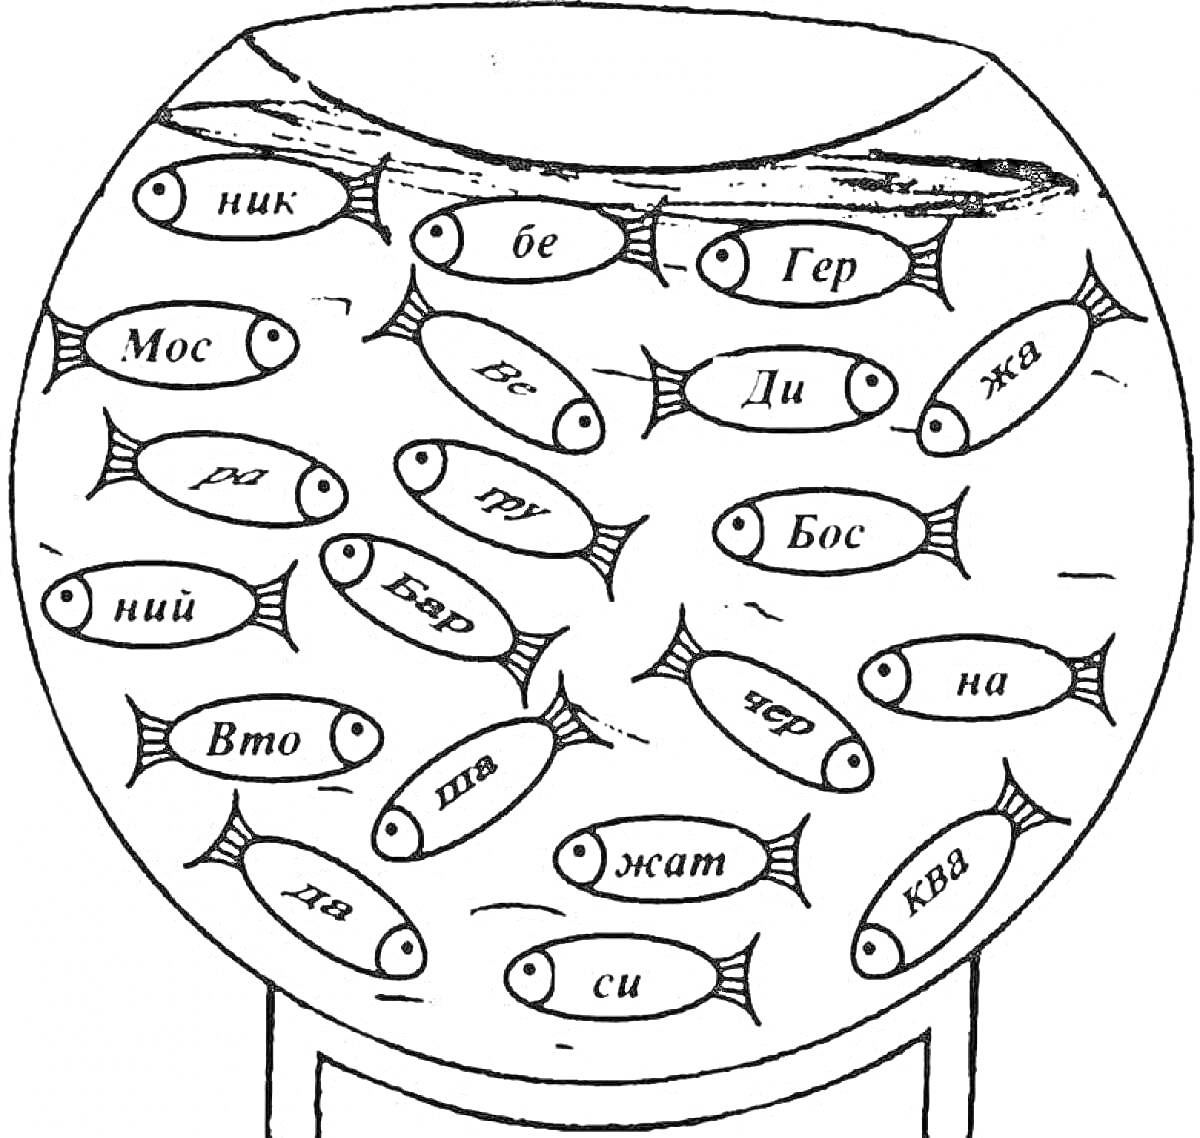 Раскраска с аквариумом и рыбками с заданиями по слогам для 2 класса (ник, бе, Гер, Моск, ра, тю, Ди, жва, ний, Бяр, ска, не, Вто, па, жма, чёр, на, ха, си, ква)